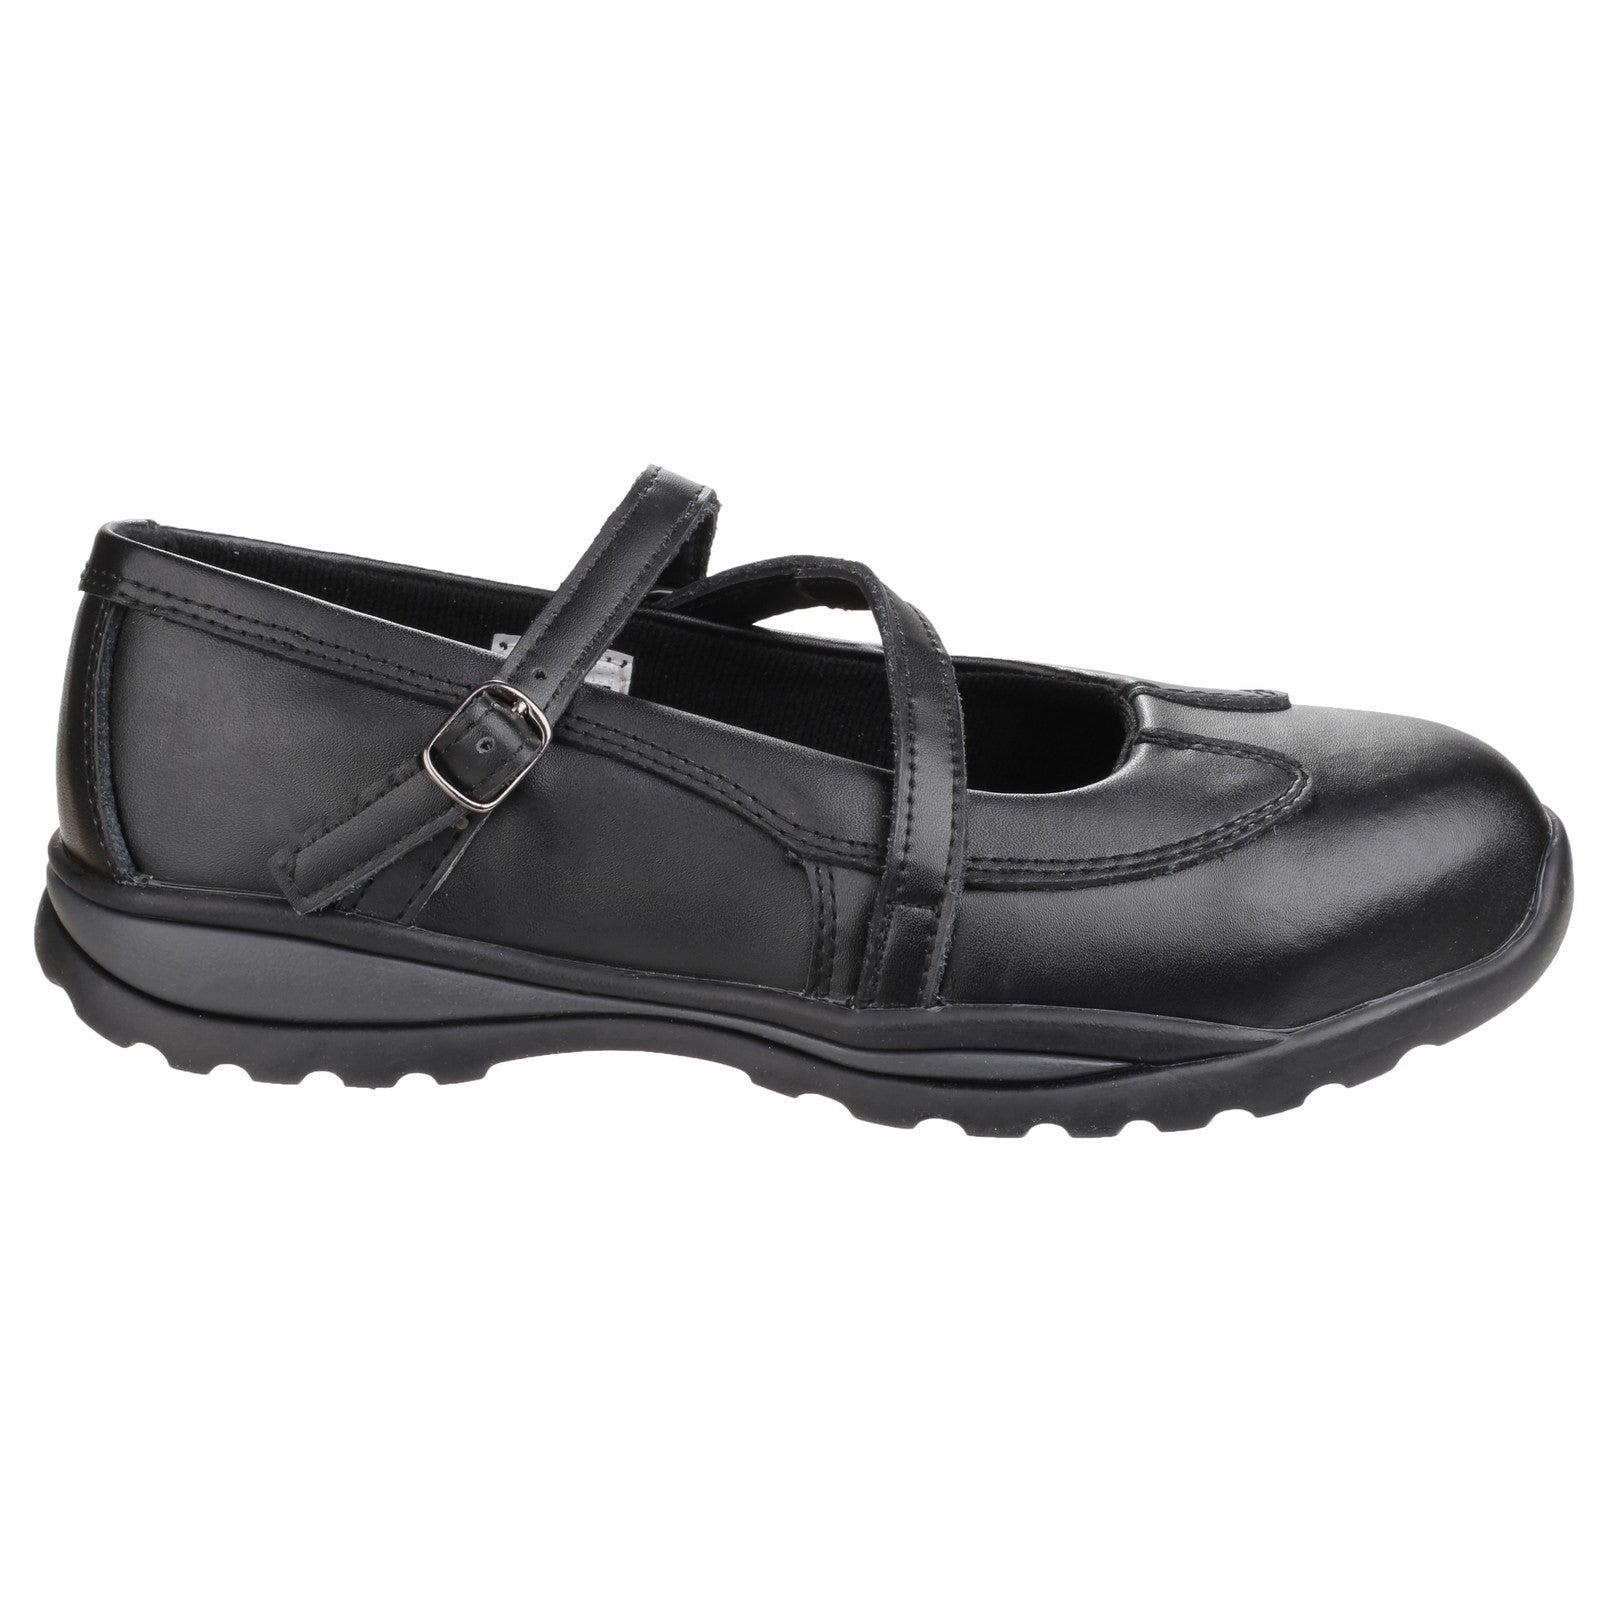 Amblers FS55 Women's Safety Shoe